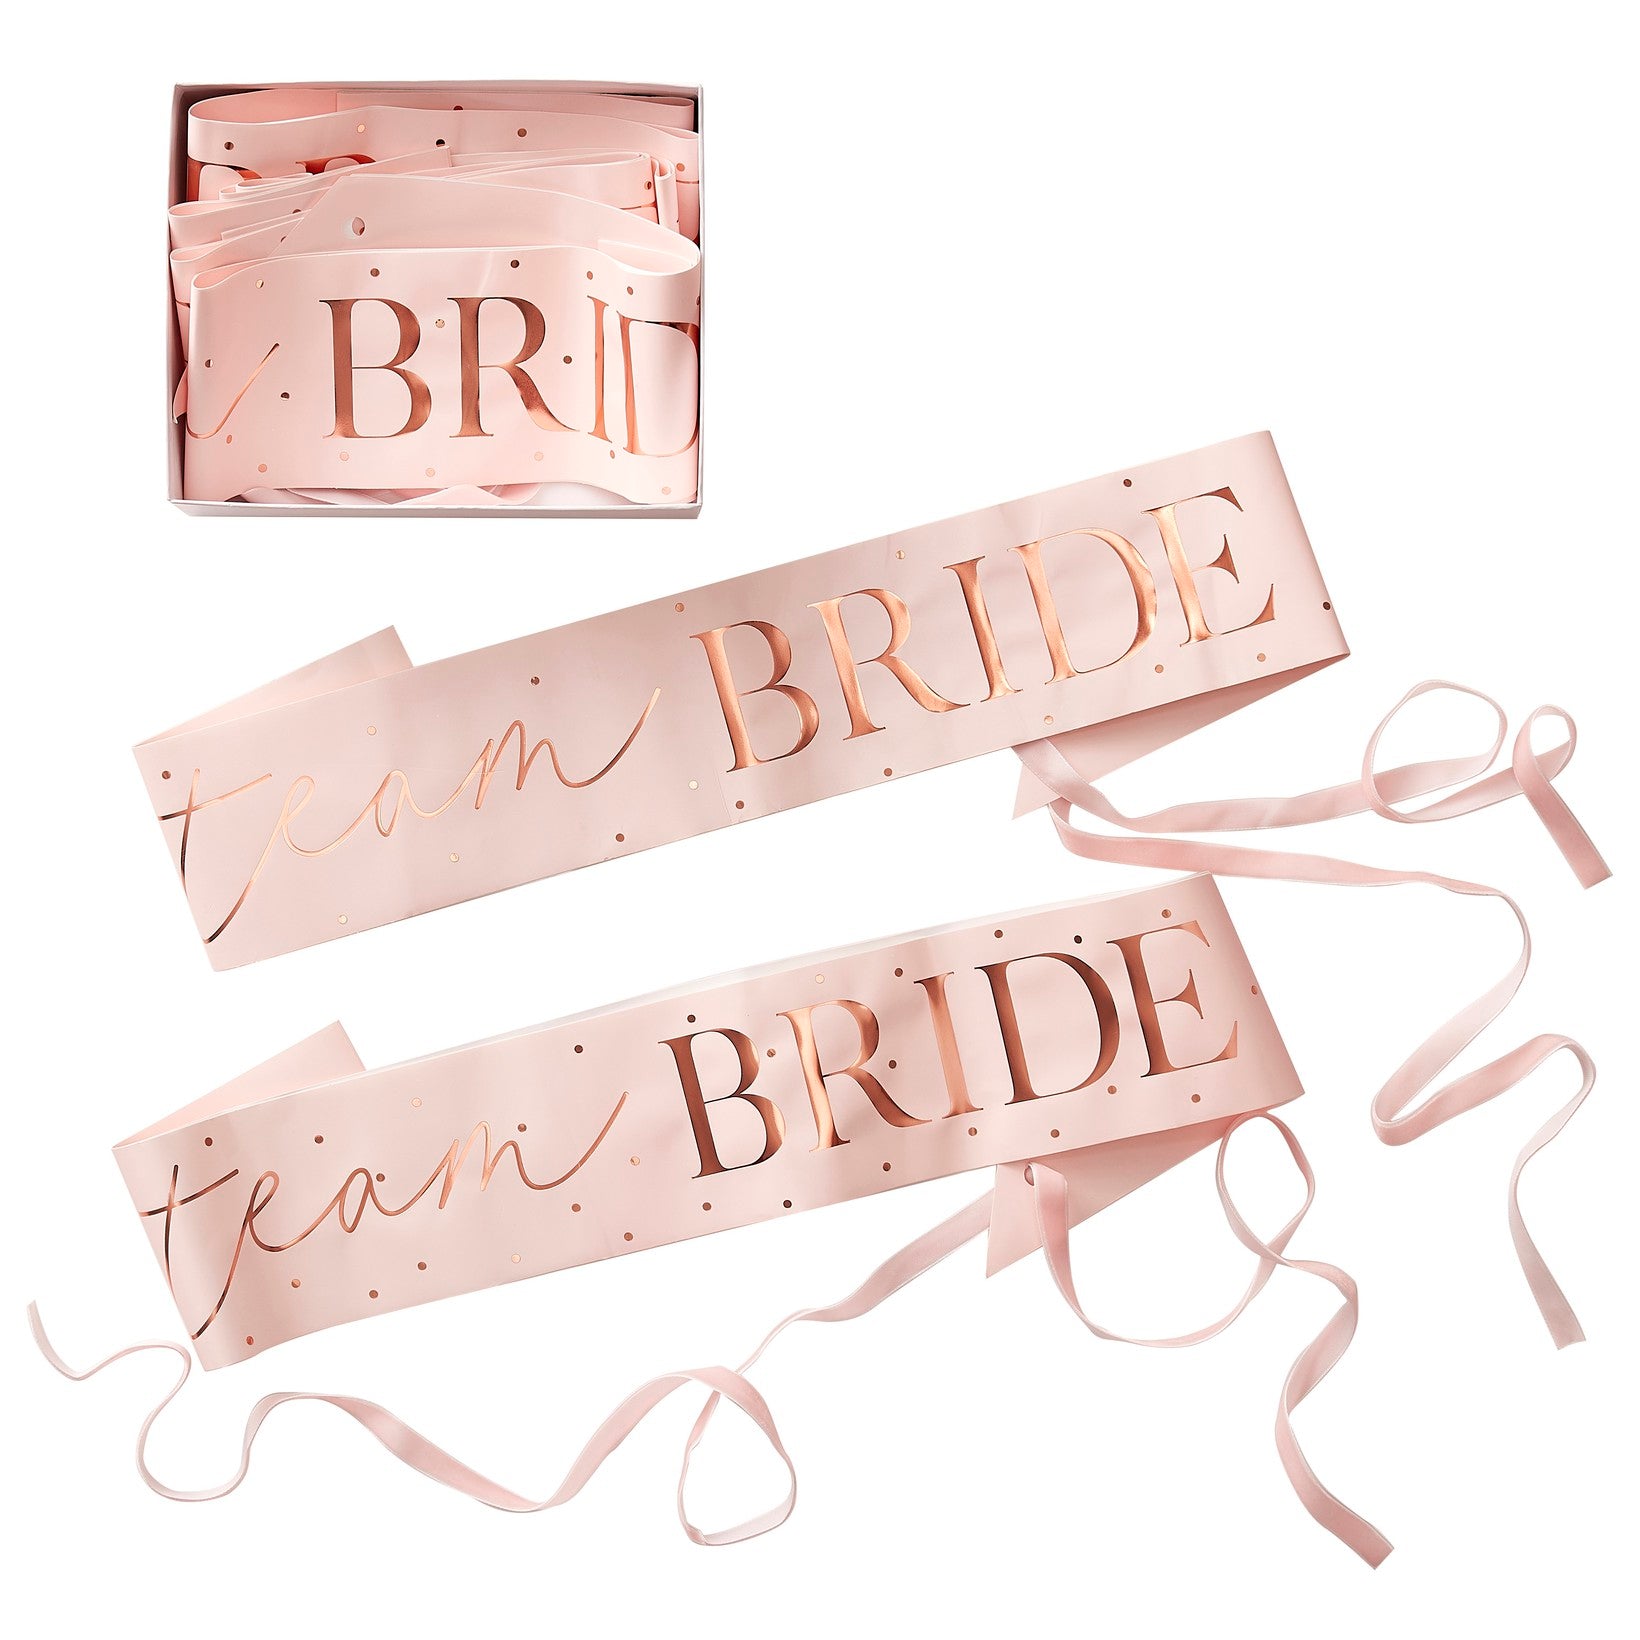 Team Bride ribbons 6 pcs